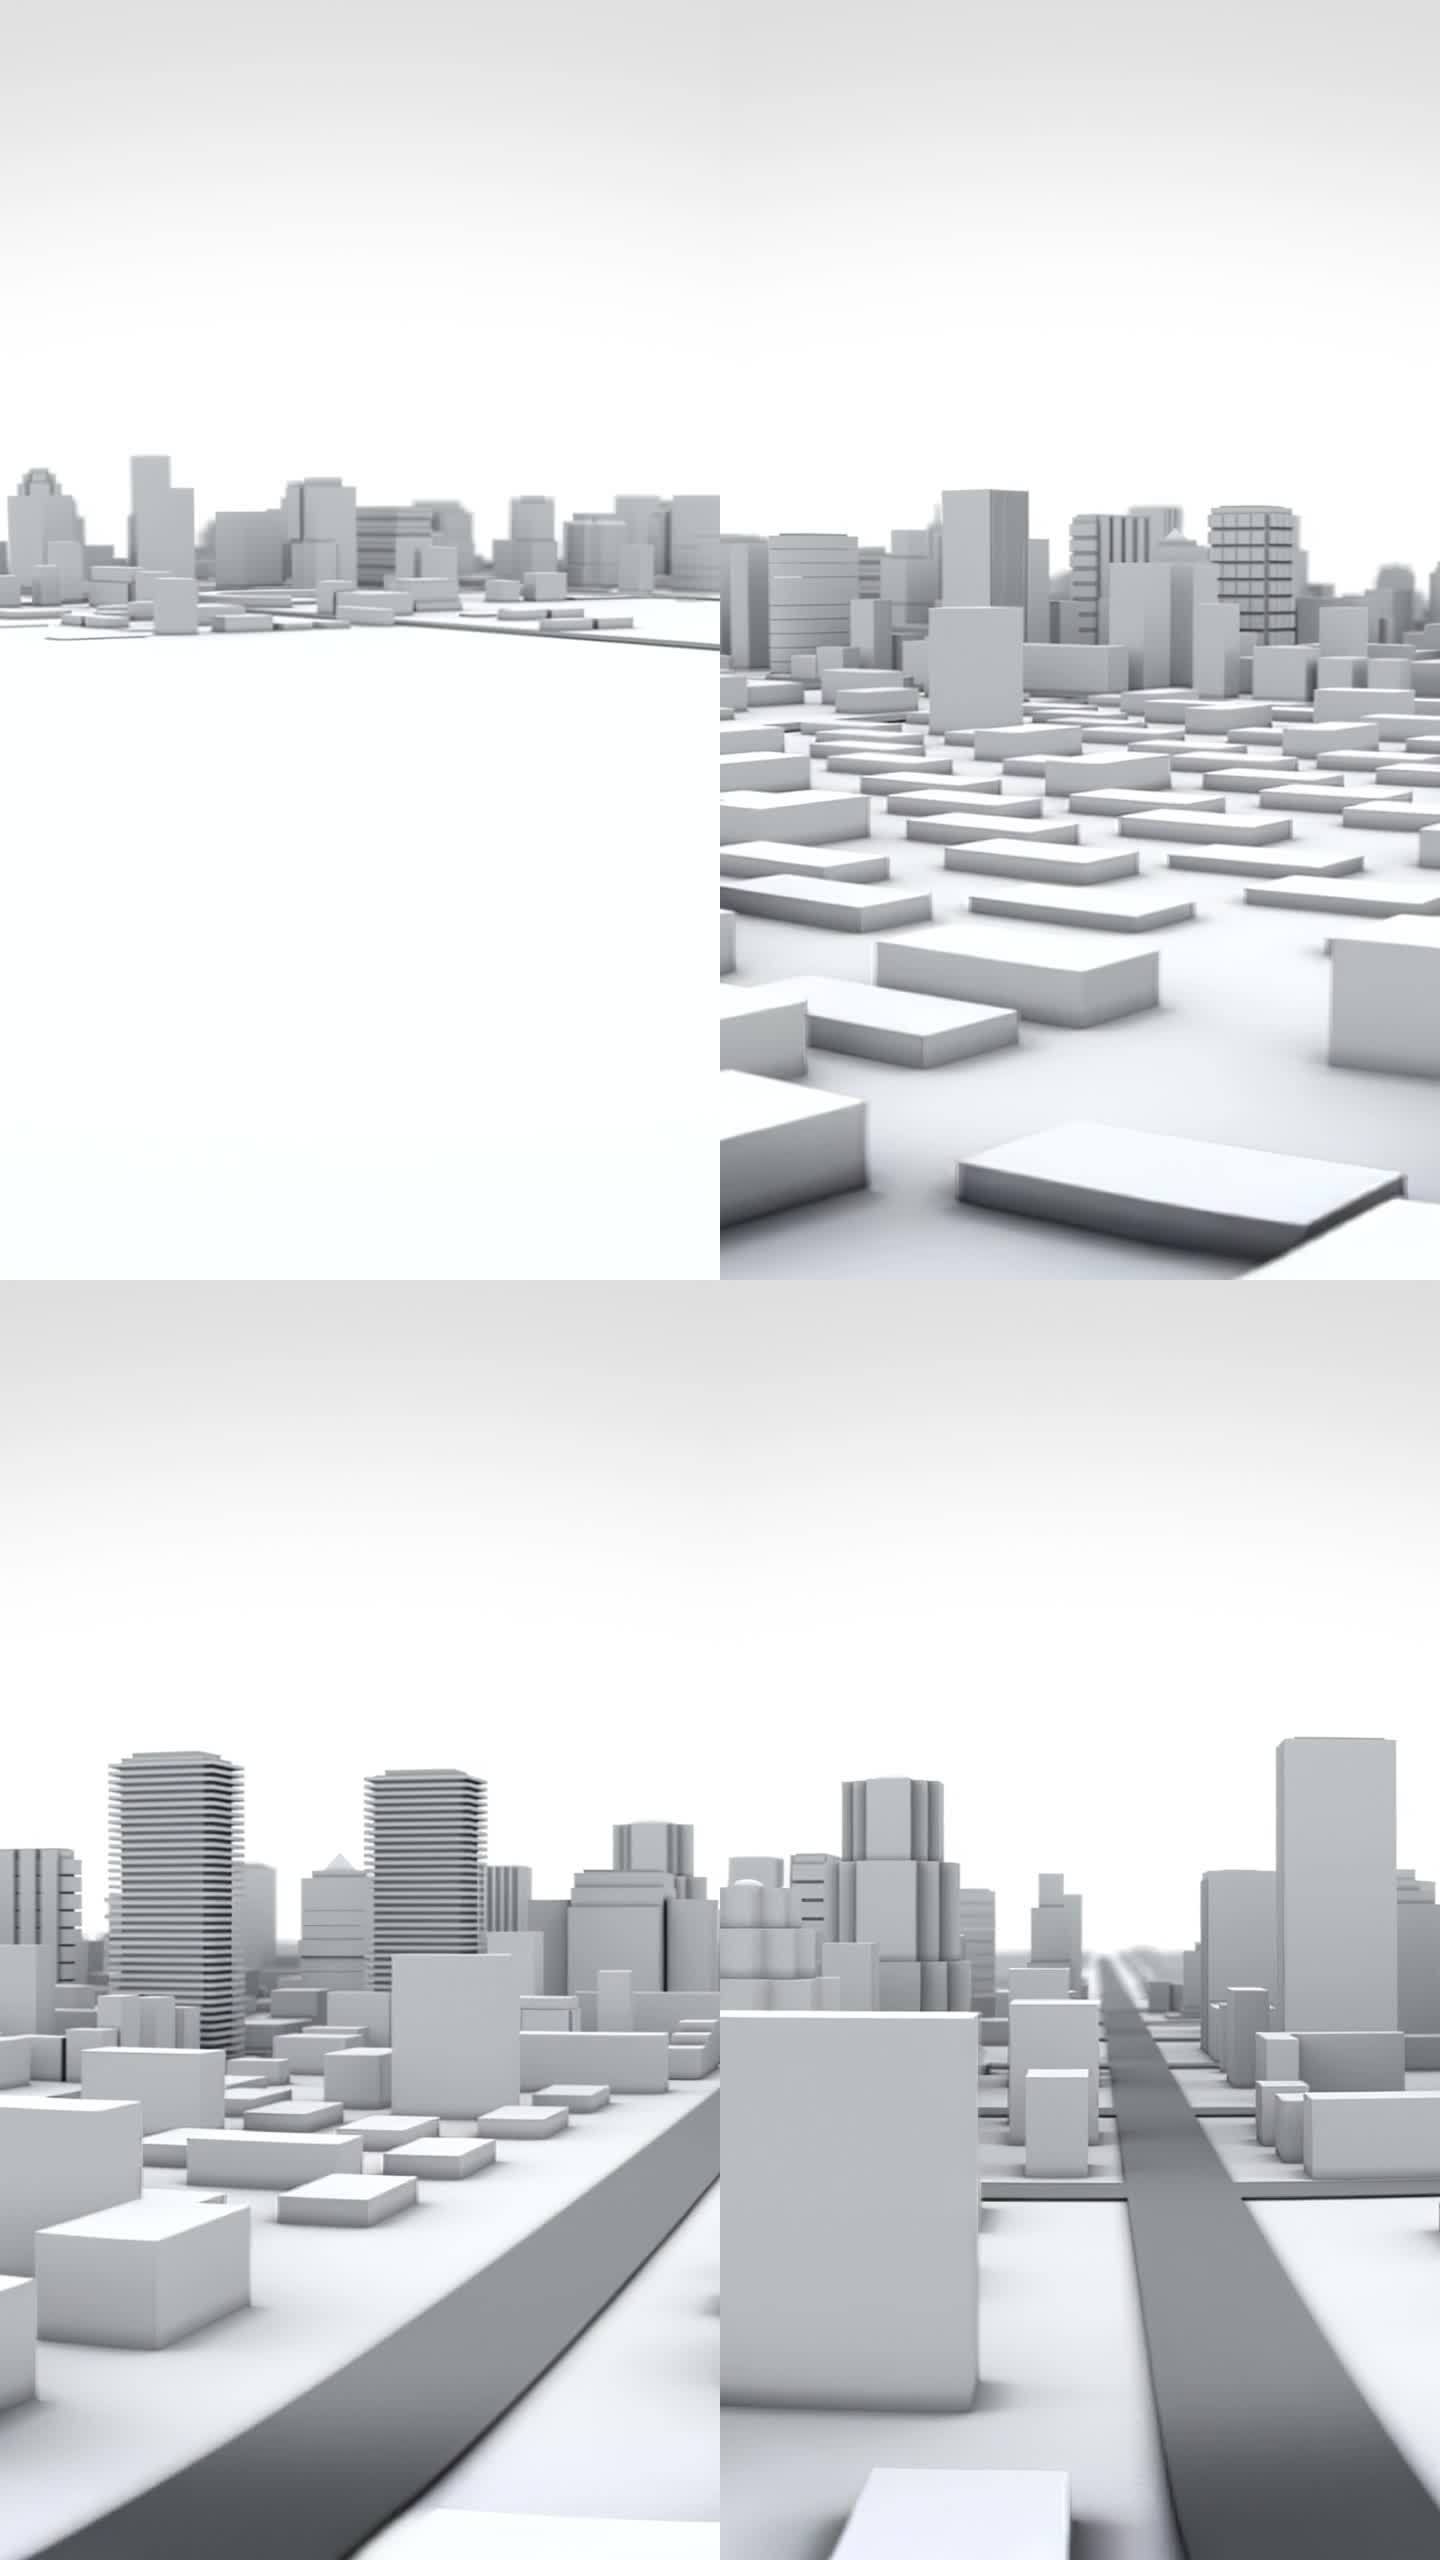 未来城市的灰度三维模型。建筑物在地面上形成和出现